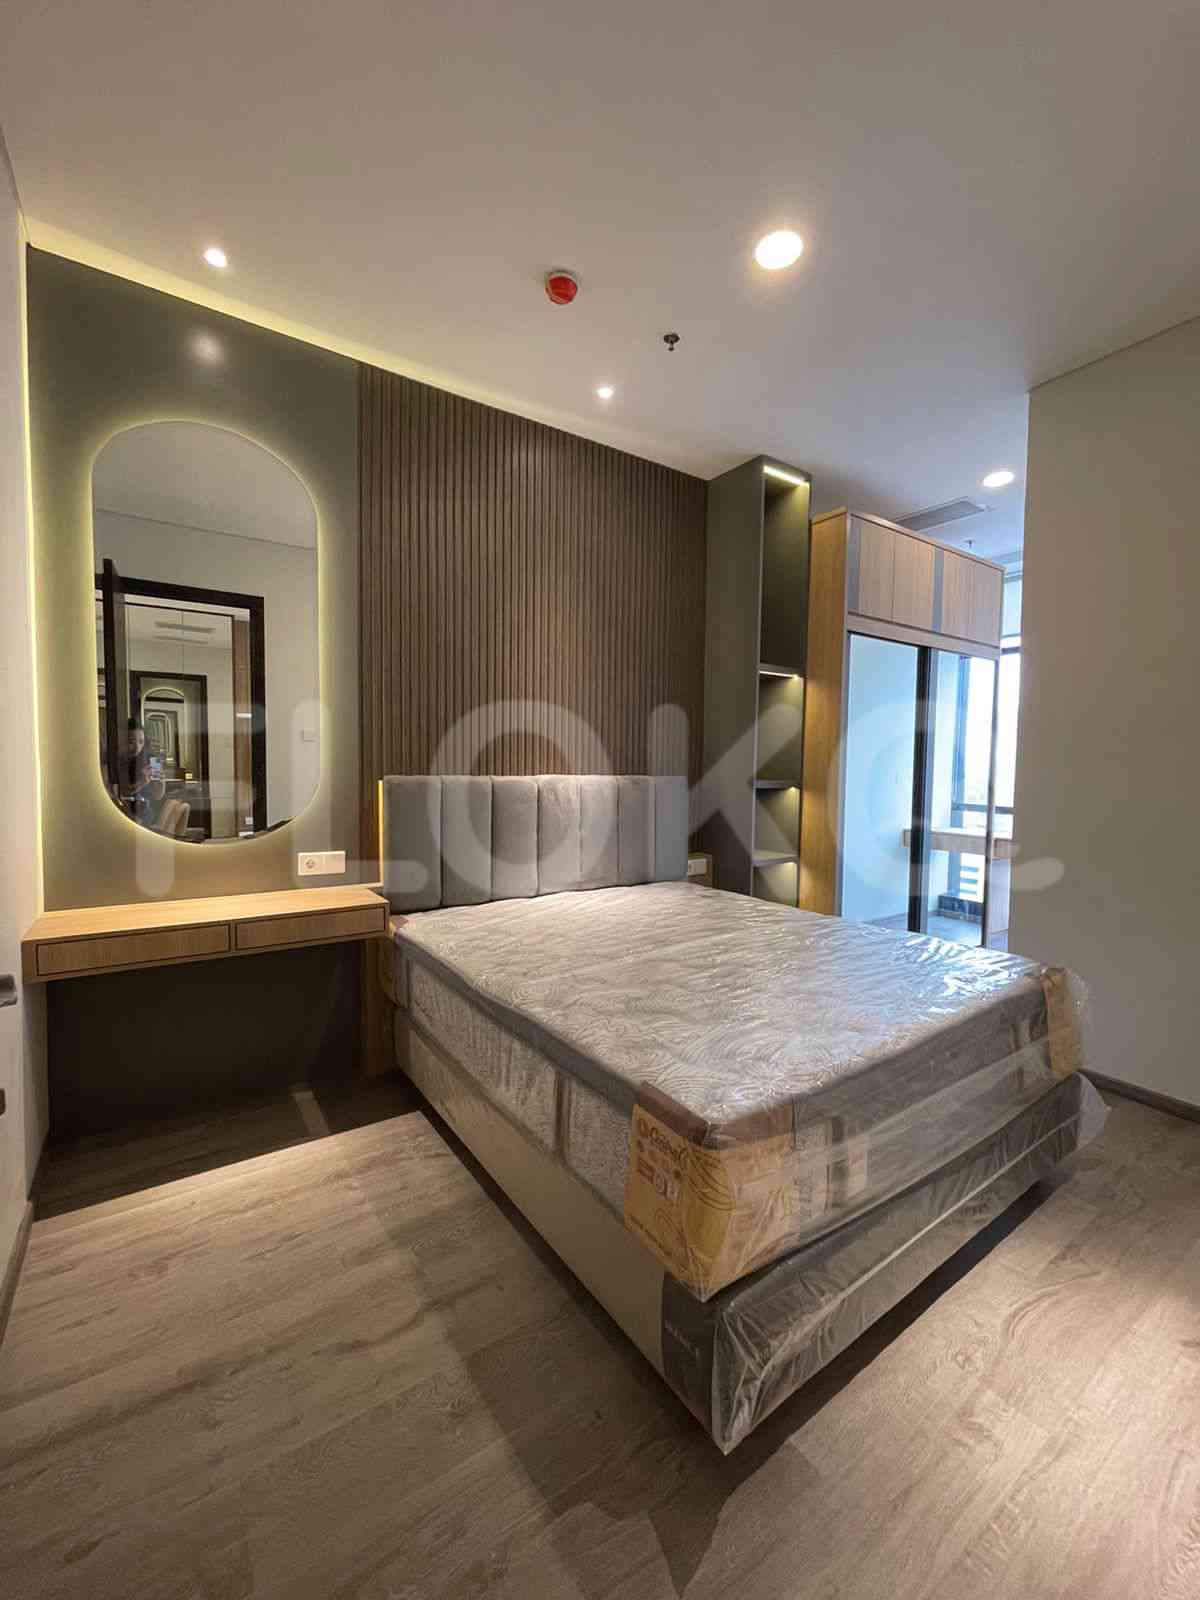 3 Bedroom on 10th Floor for Rent in Sudirman Suites Jakarta - fsuaf7 19